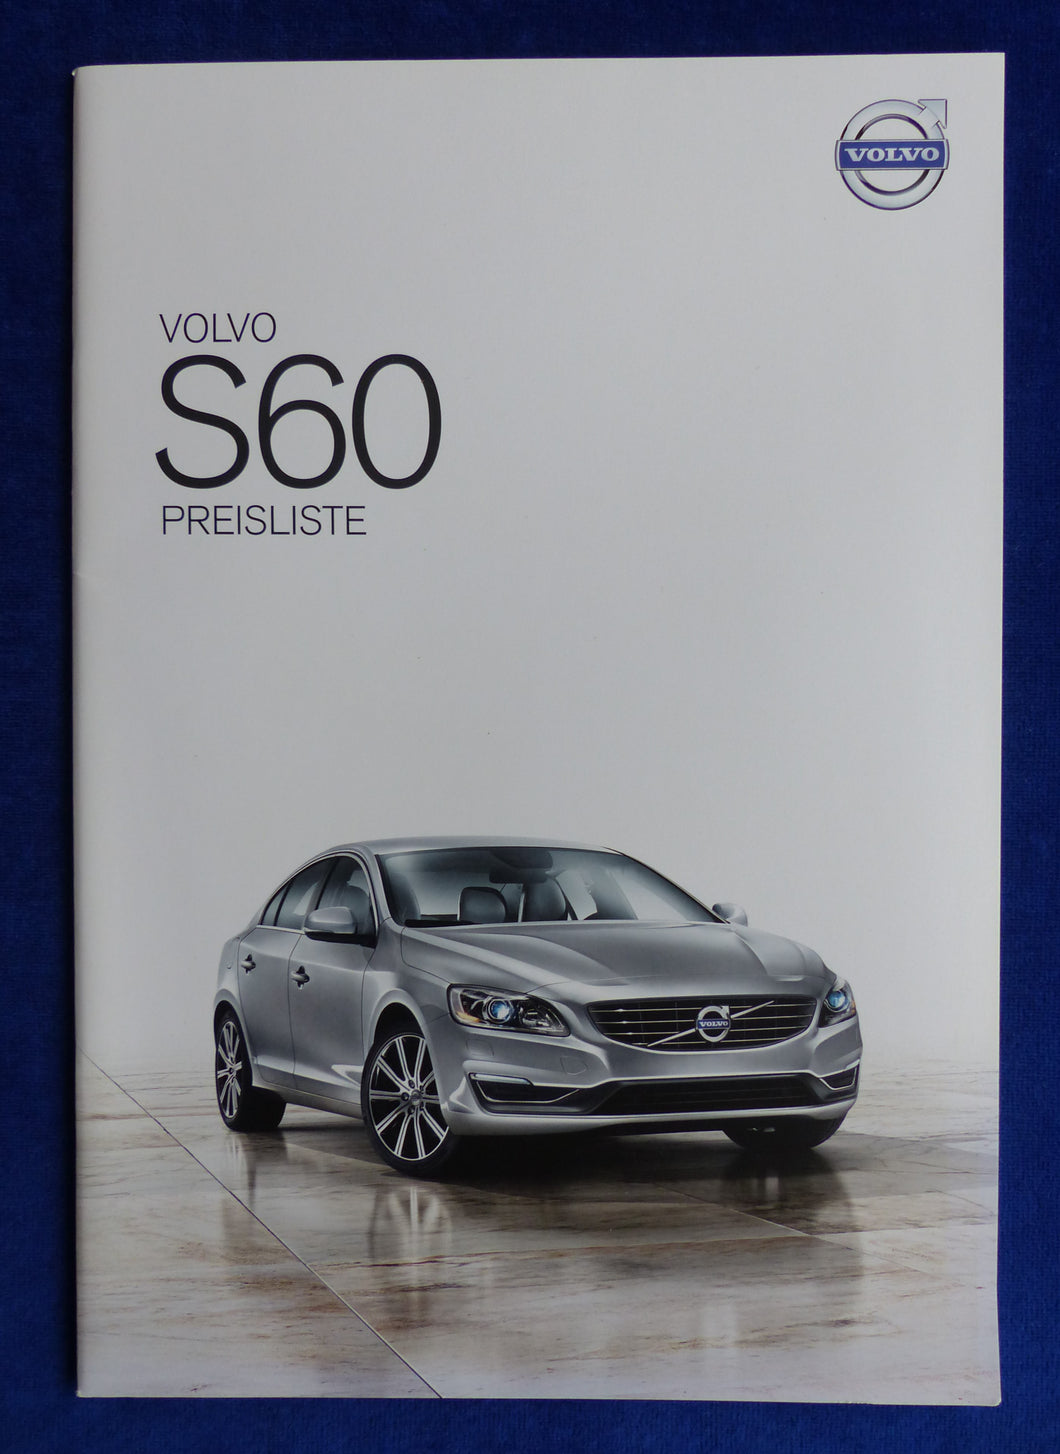 Volvo S60 - Preisliste MJ 2014 - Prospekt Brochure 04.2013